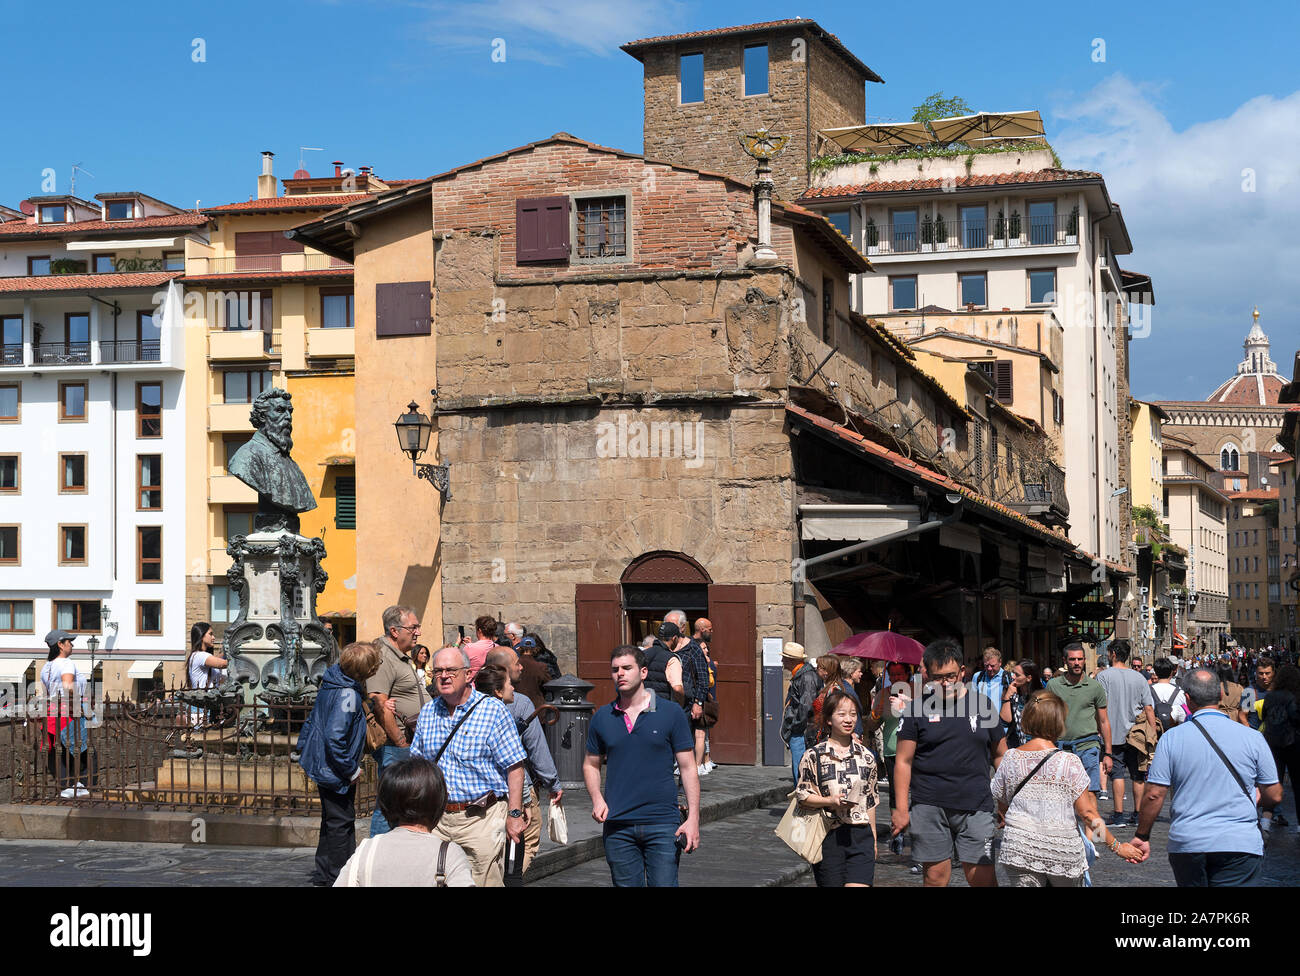 Visiteurs Touristes shopping sur Ponte vecchio dans la ville toscane de florence, toscane, italie. Banque D'Images